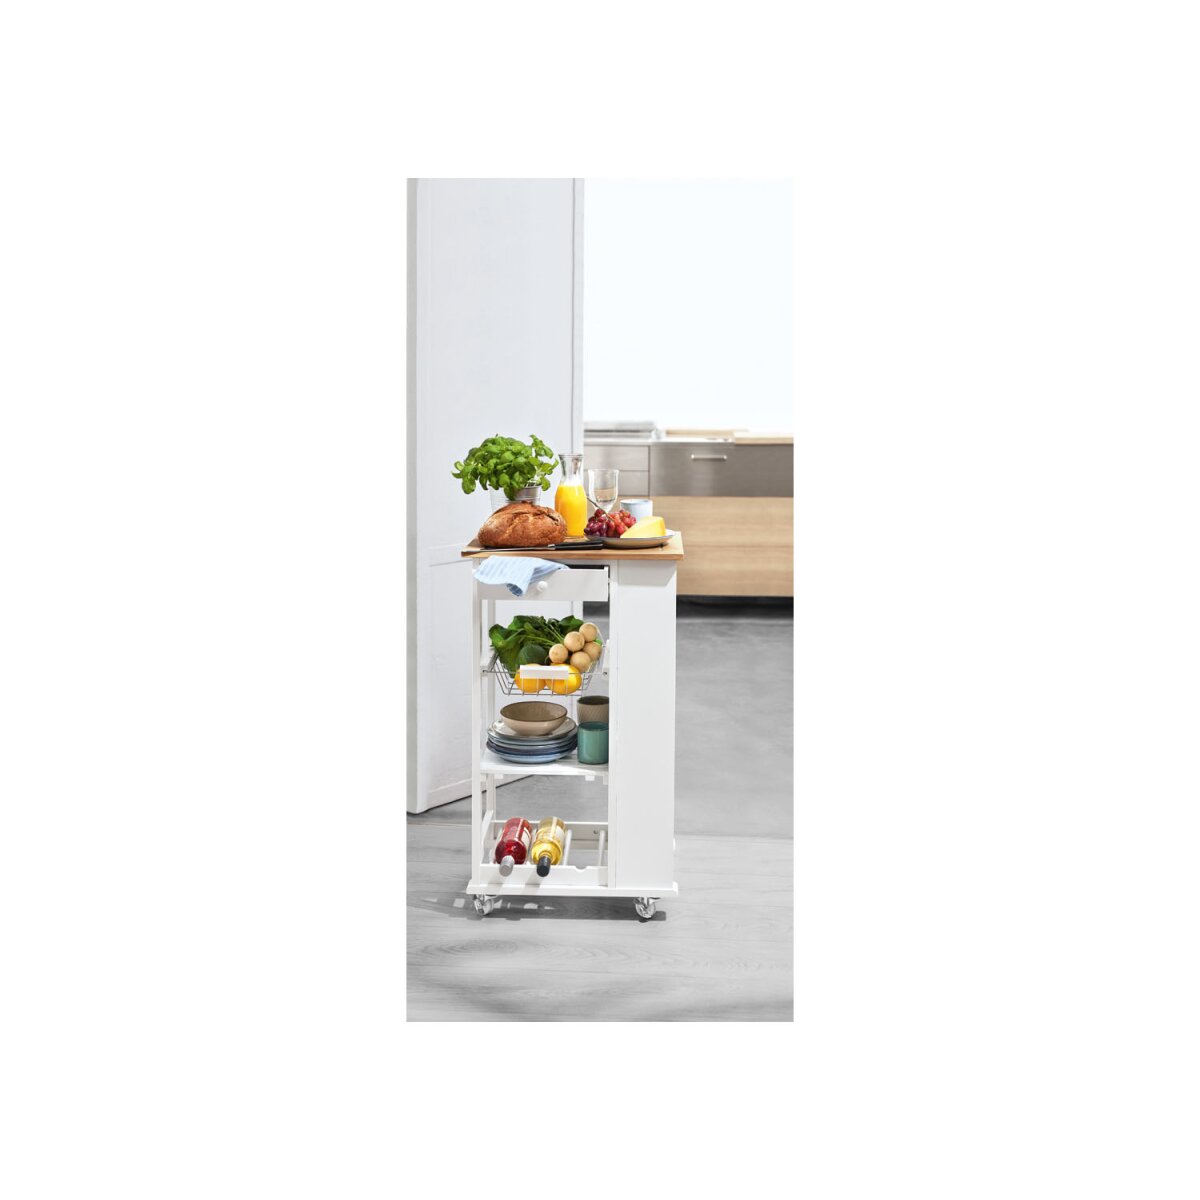 LIVARNO home Küchentrolley mit Bambusholz, weiß/braun - B-Ware sehr gut,  39,99 €